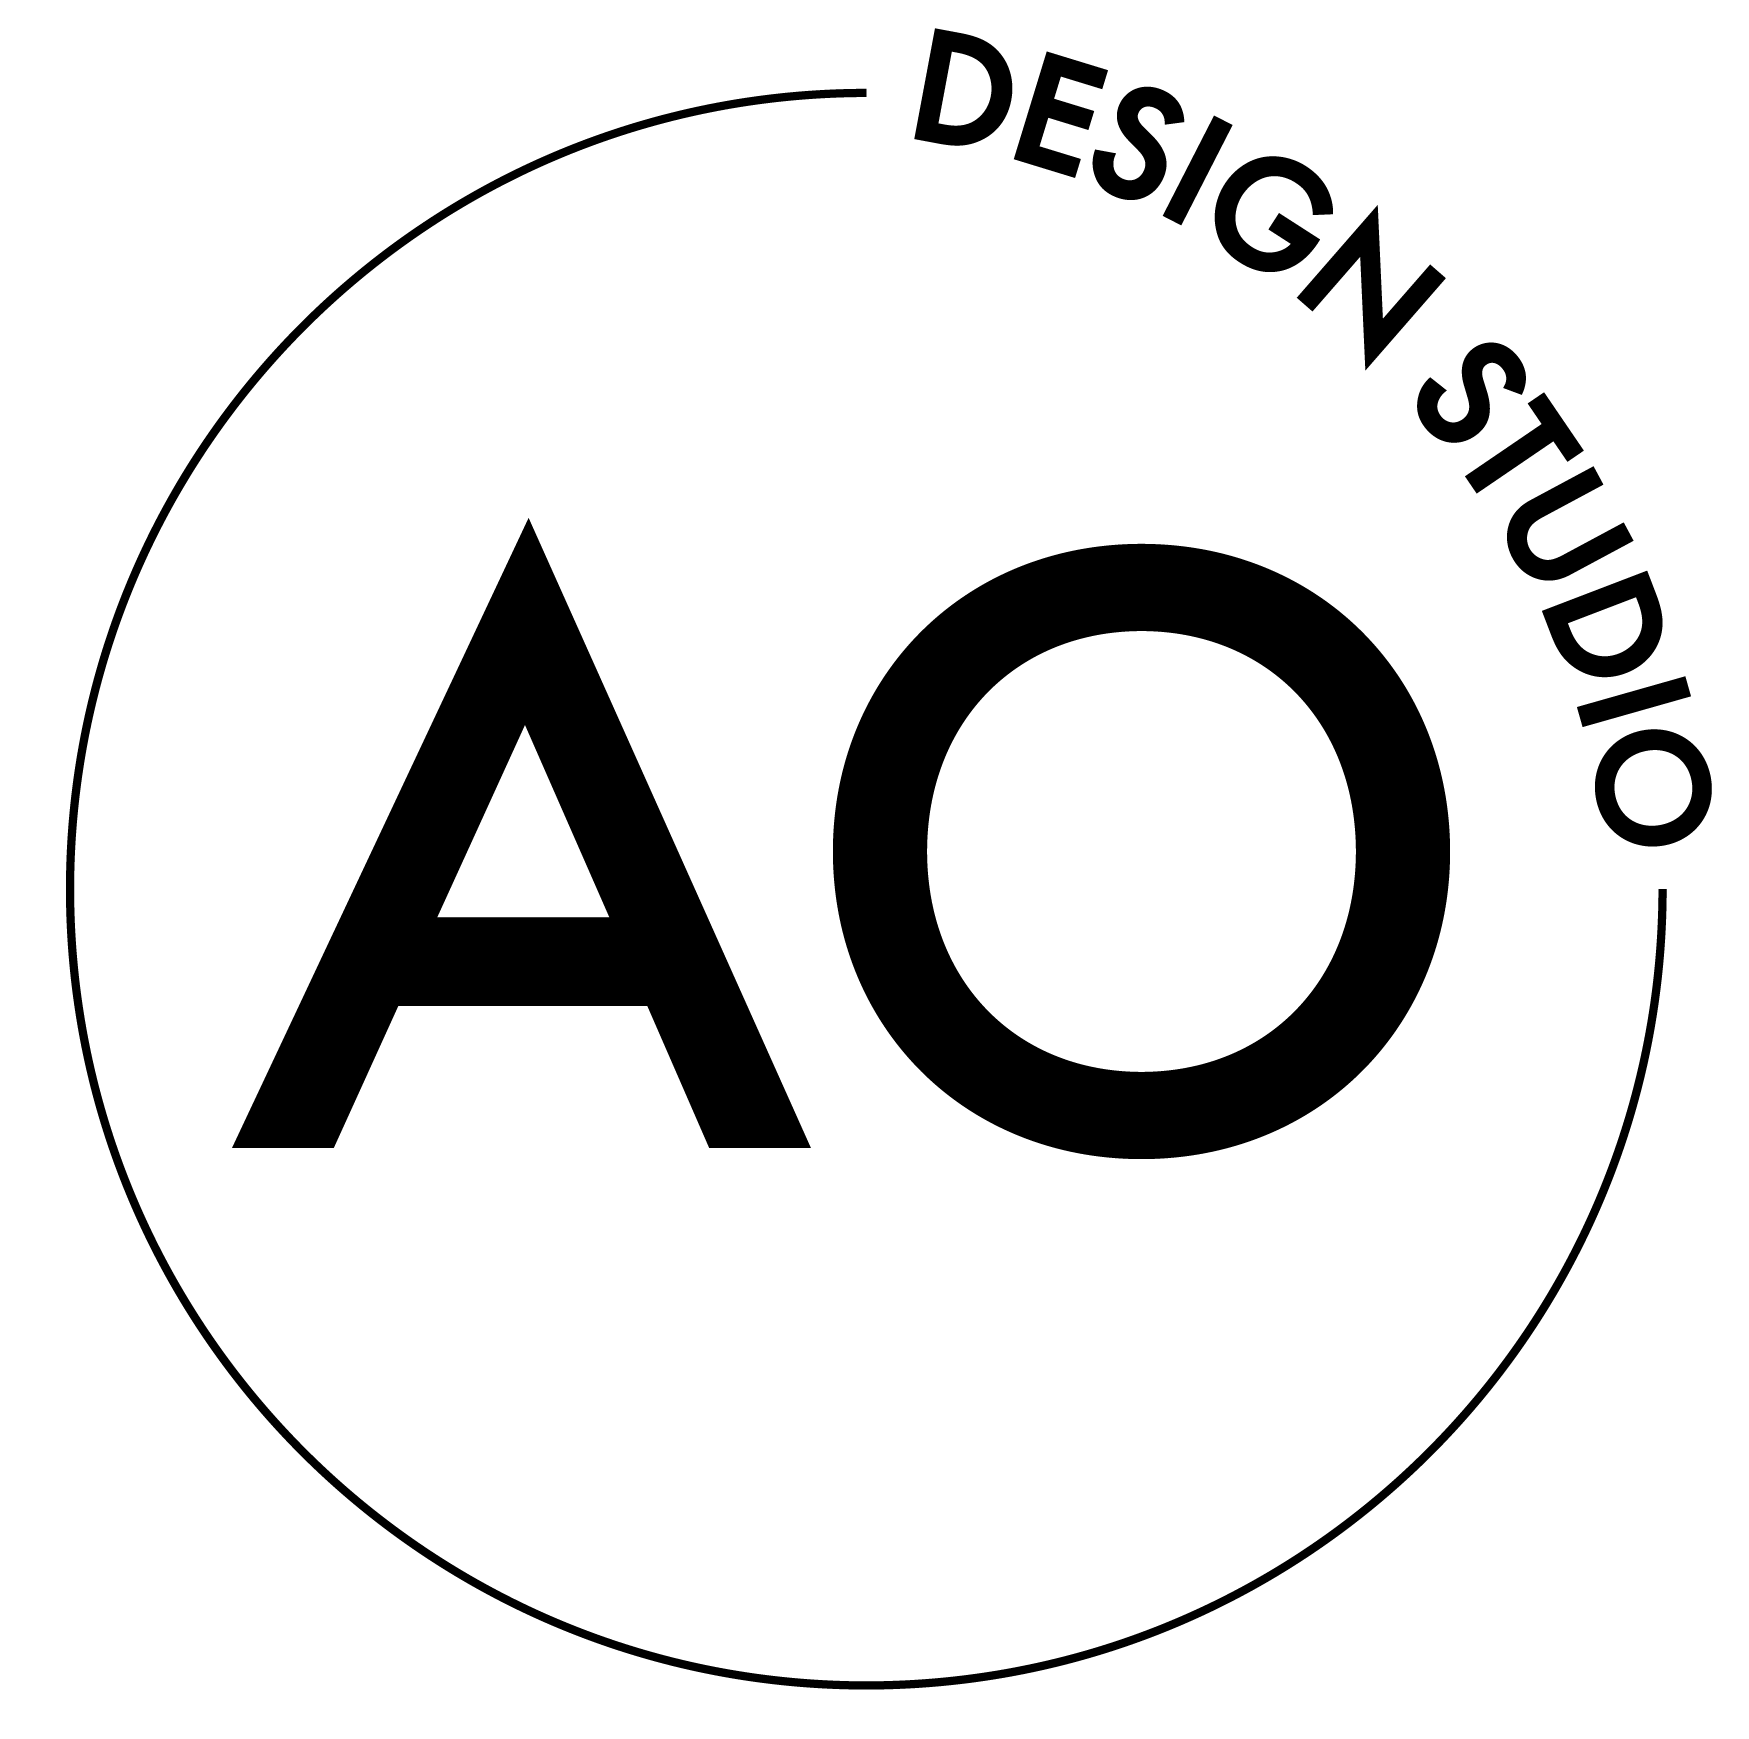 AO DESIGN STUDIO